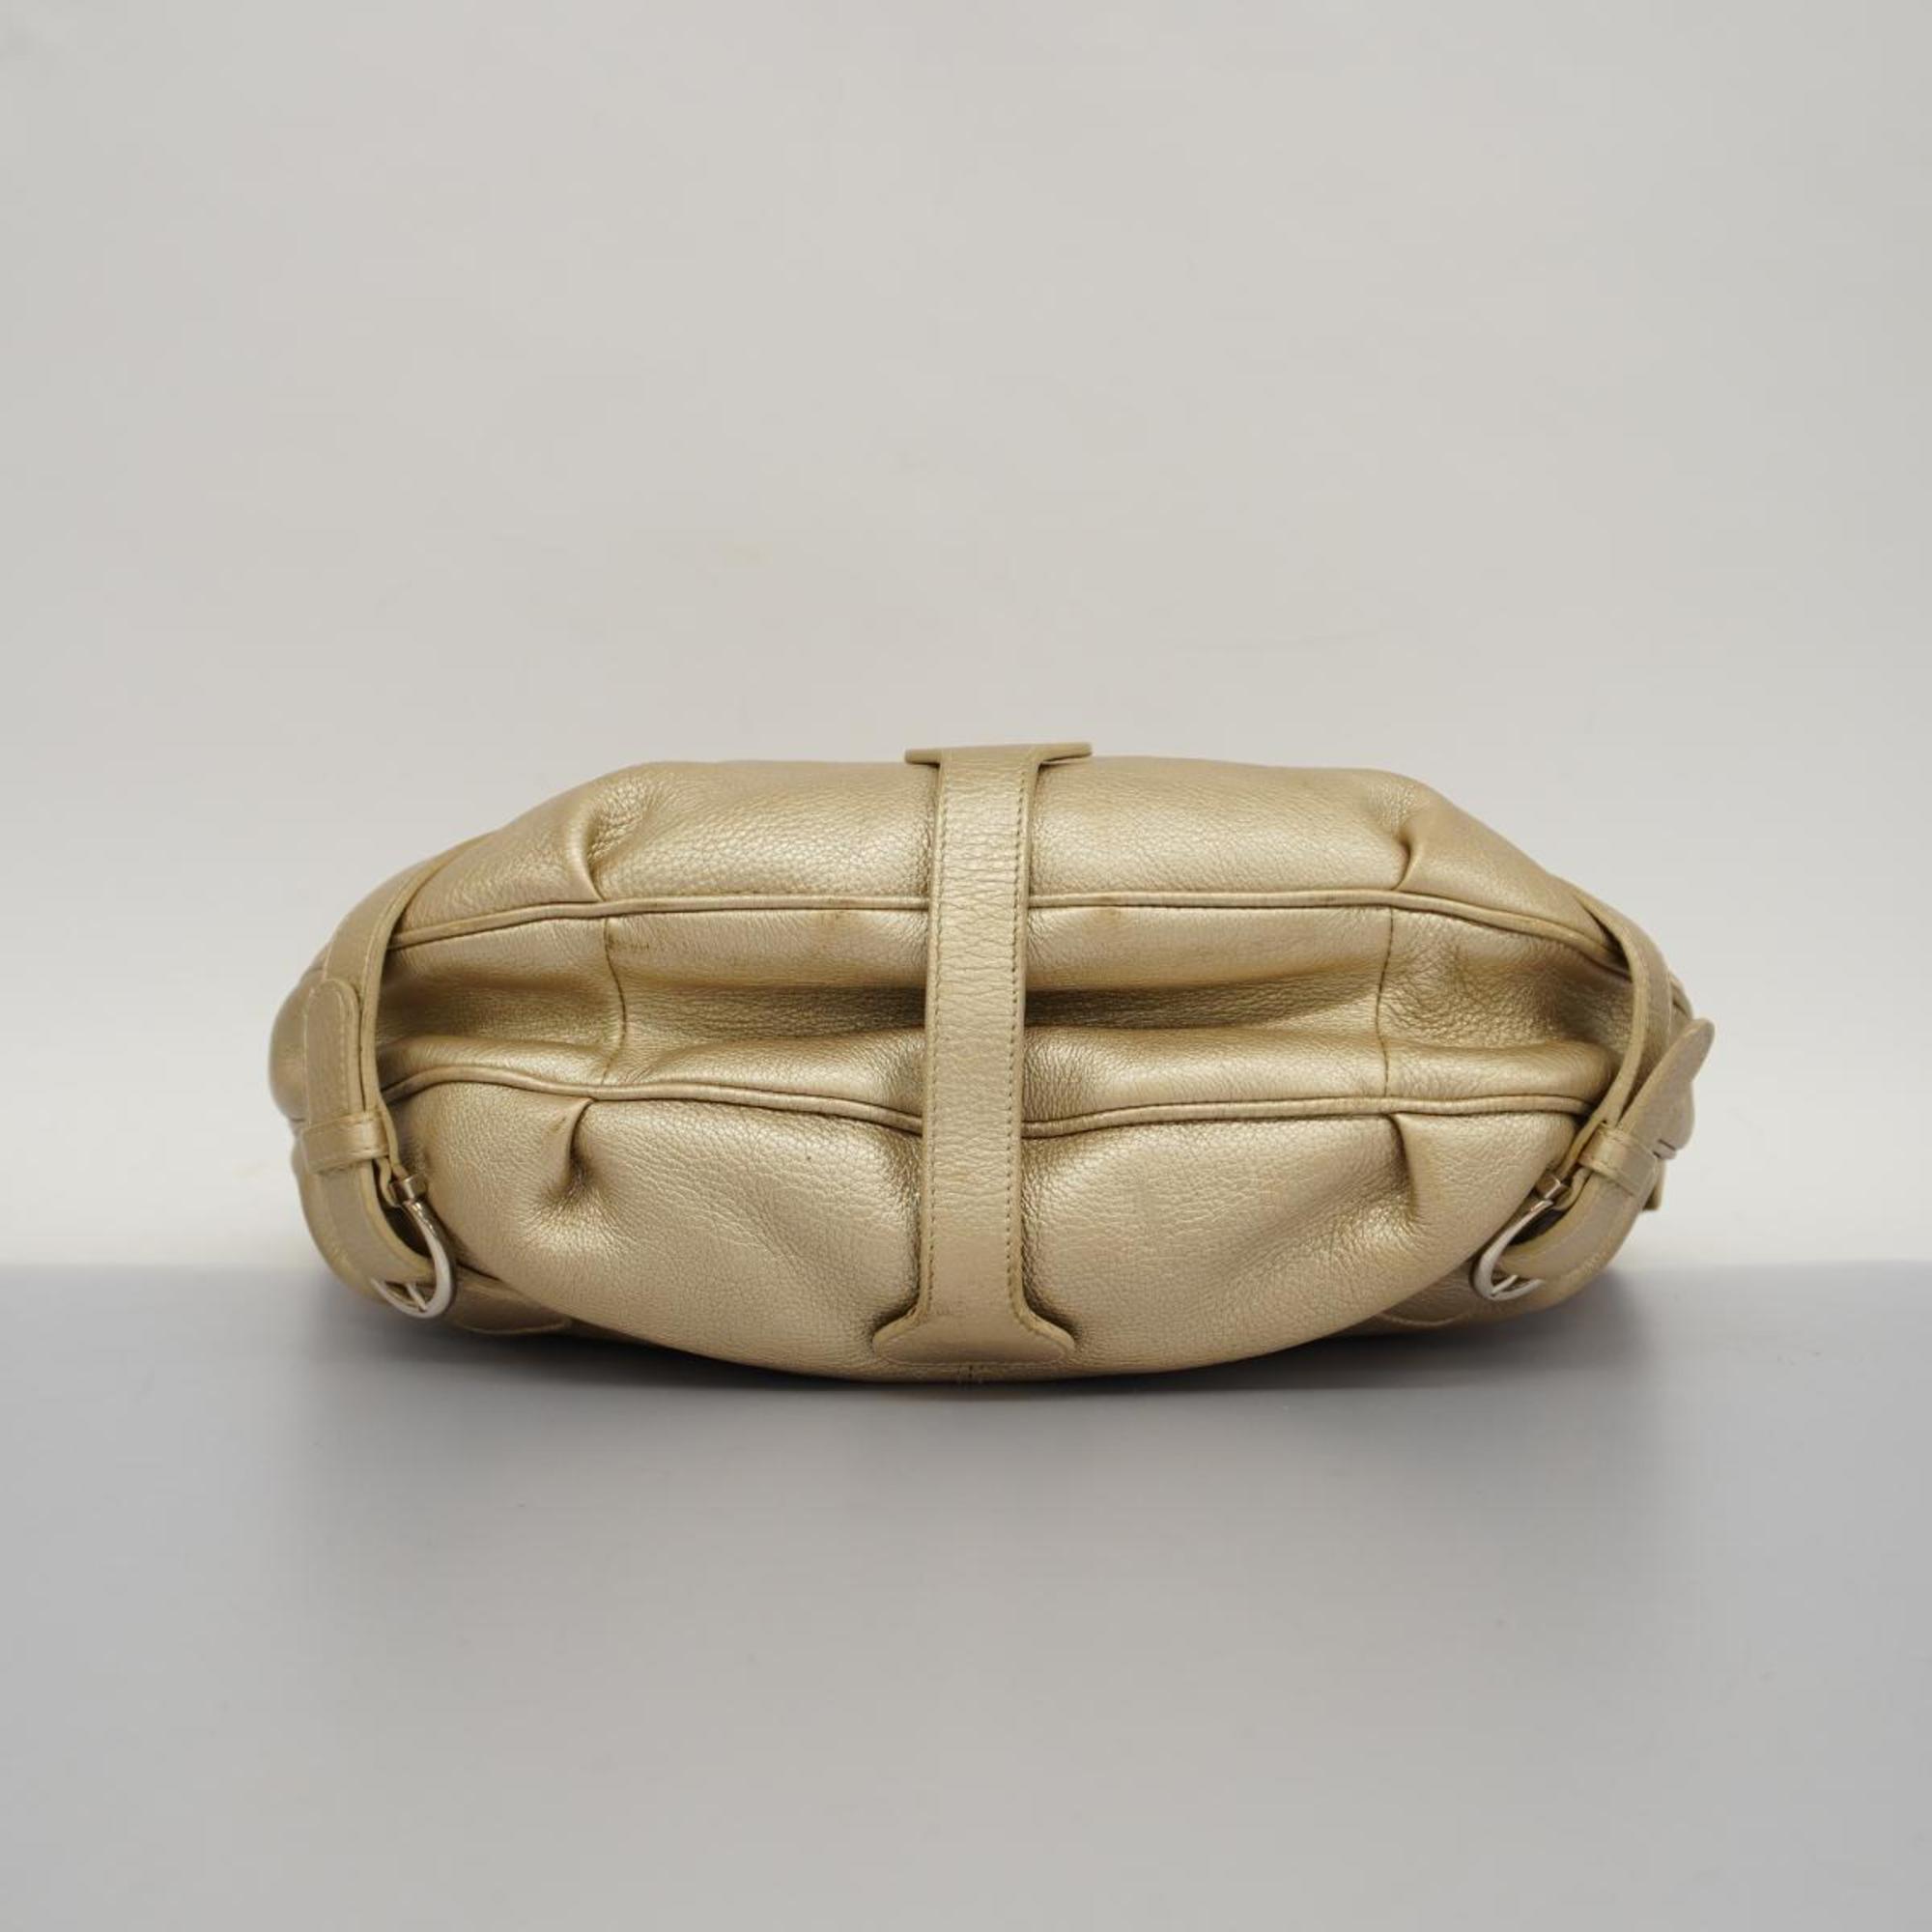 Salvatore Ferragamo handbag Gancini leather gold ladies